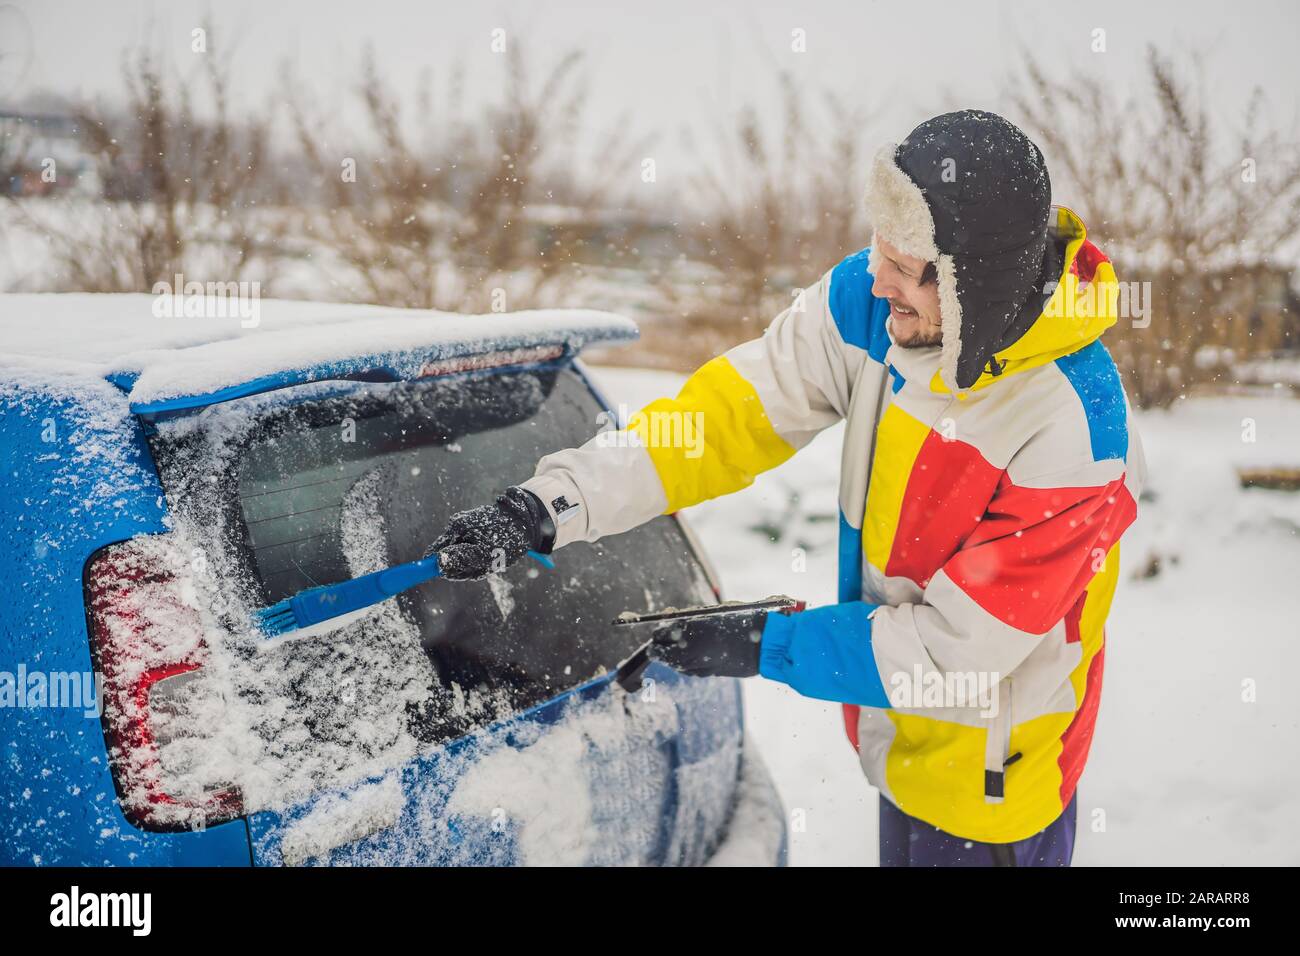 Mit einer Bürste Schnee aus dem Auto entfernen Stockfotografie - Alamy